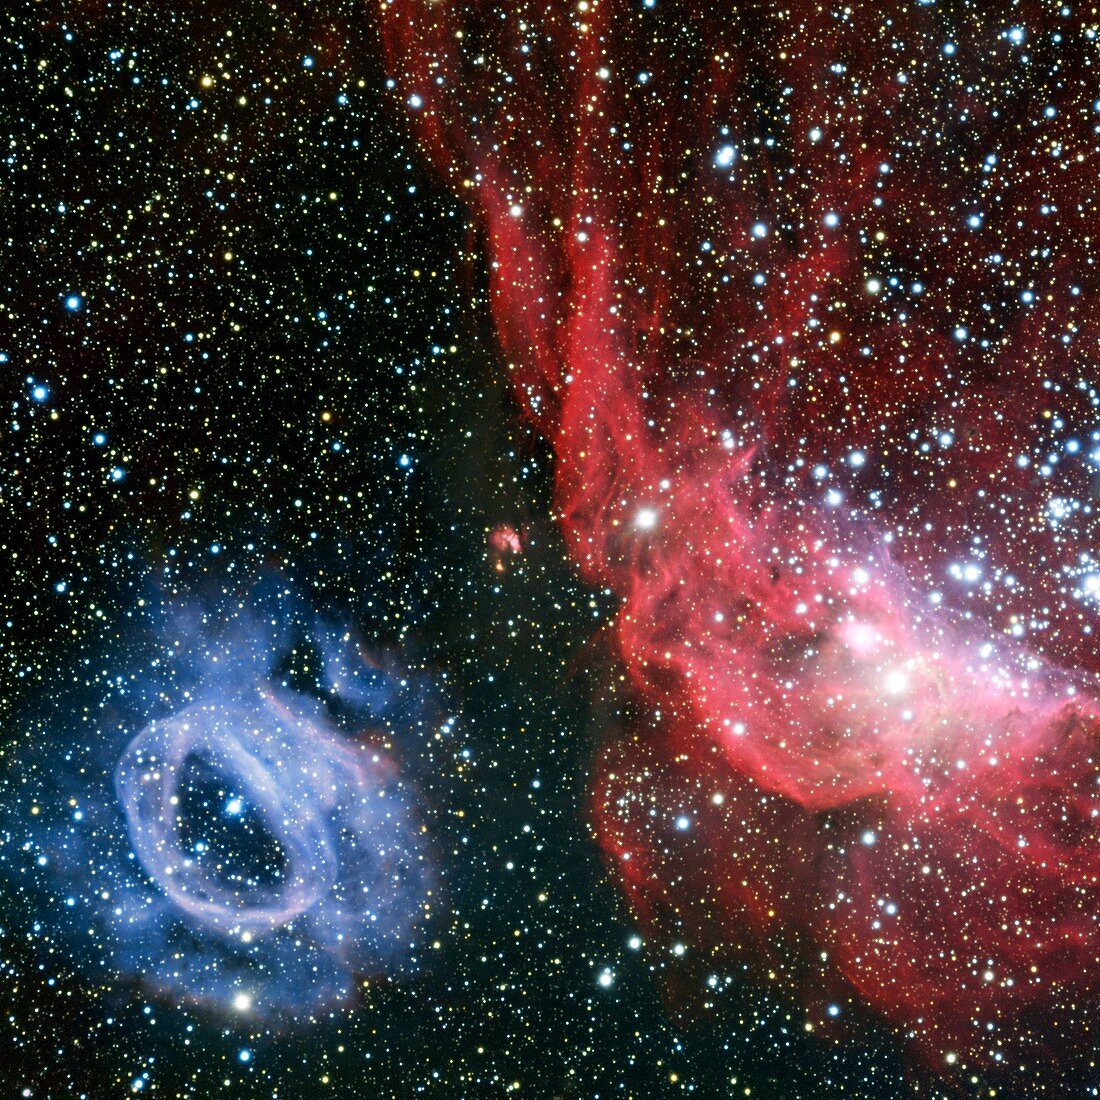 Nebulae NGC 2020 and NGC 2014